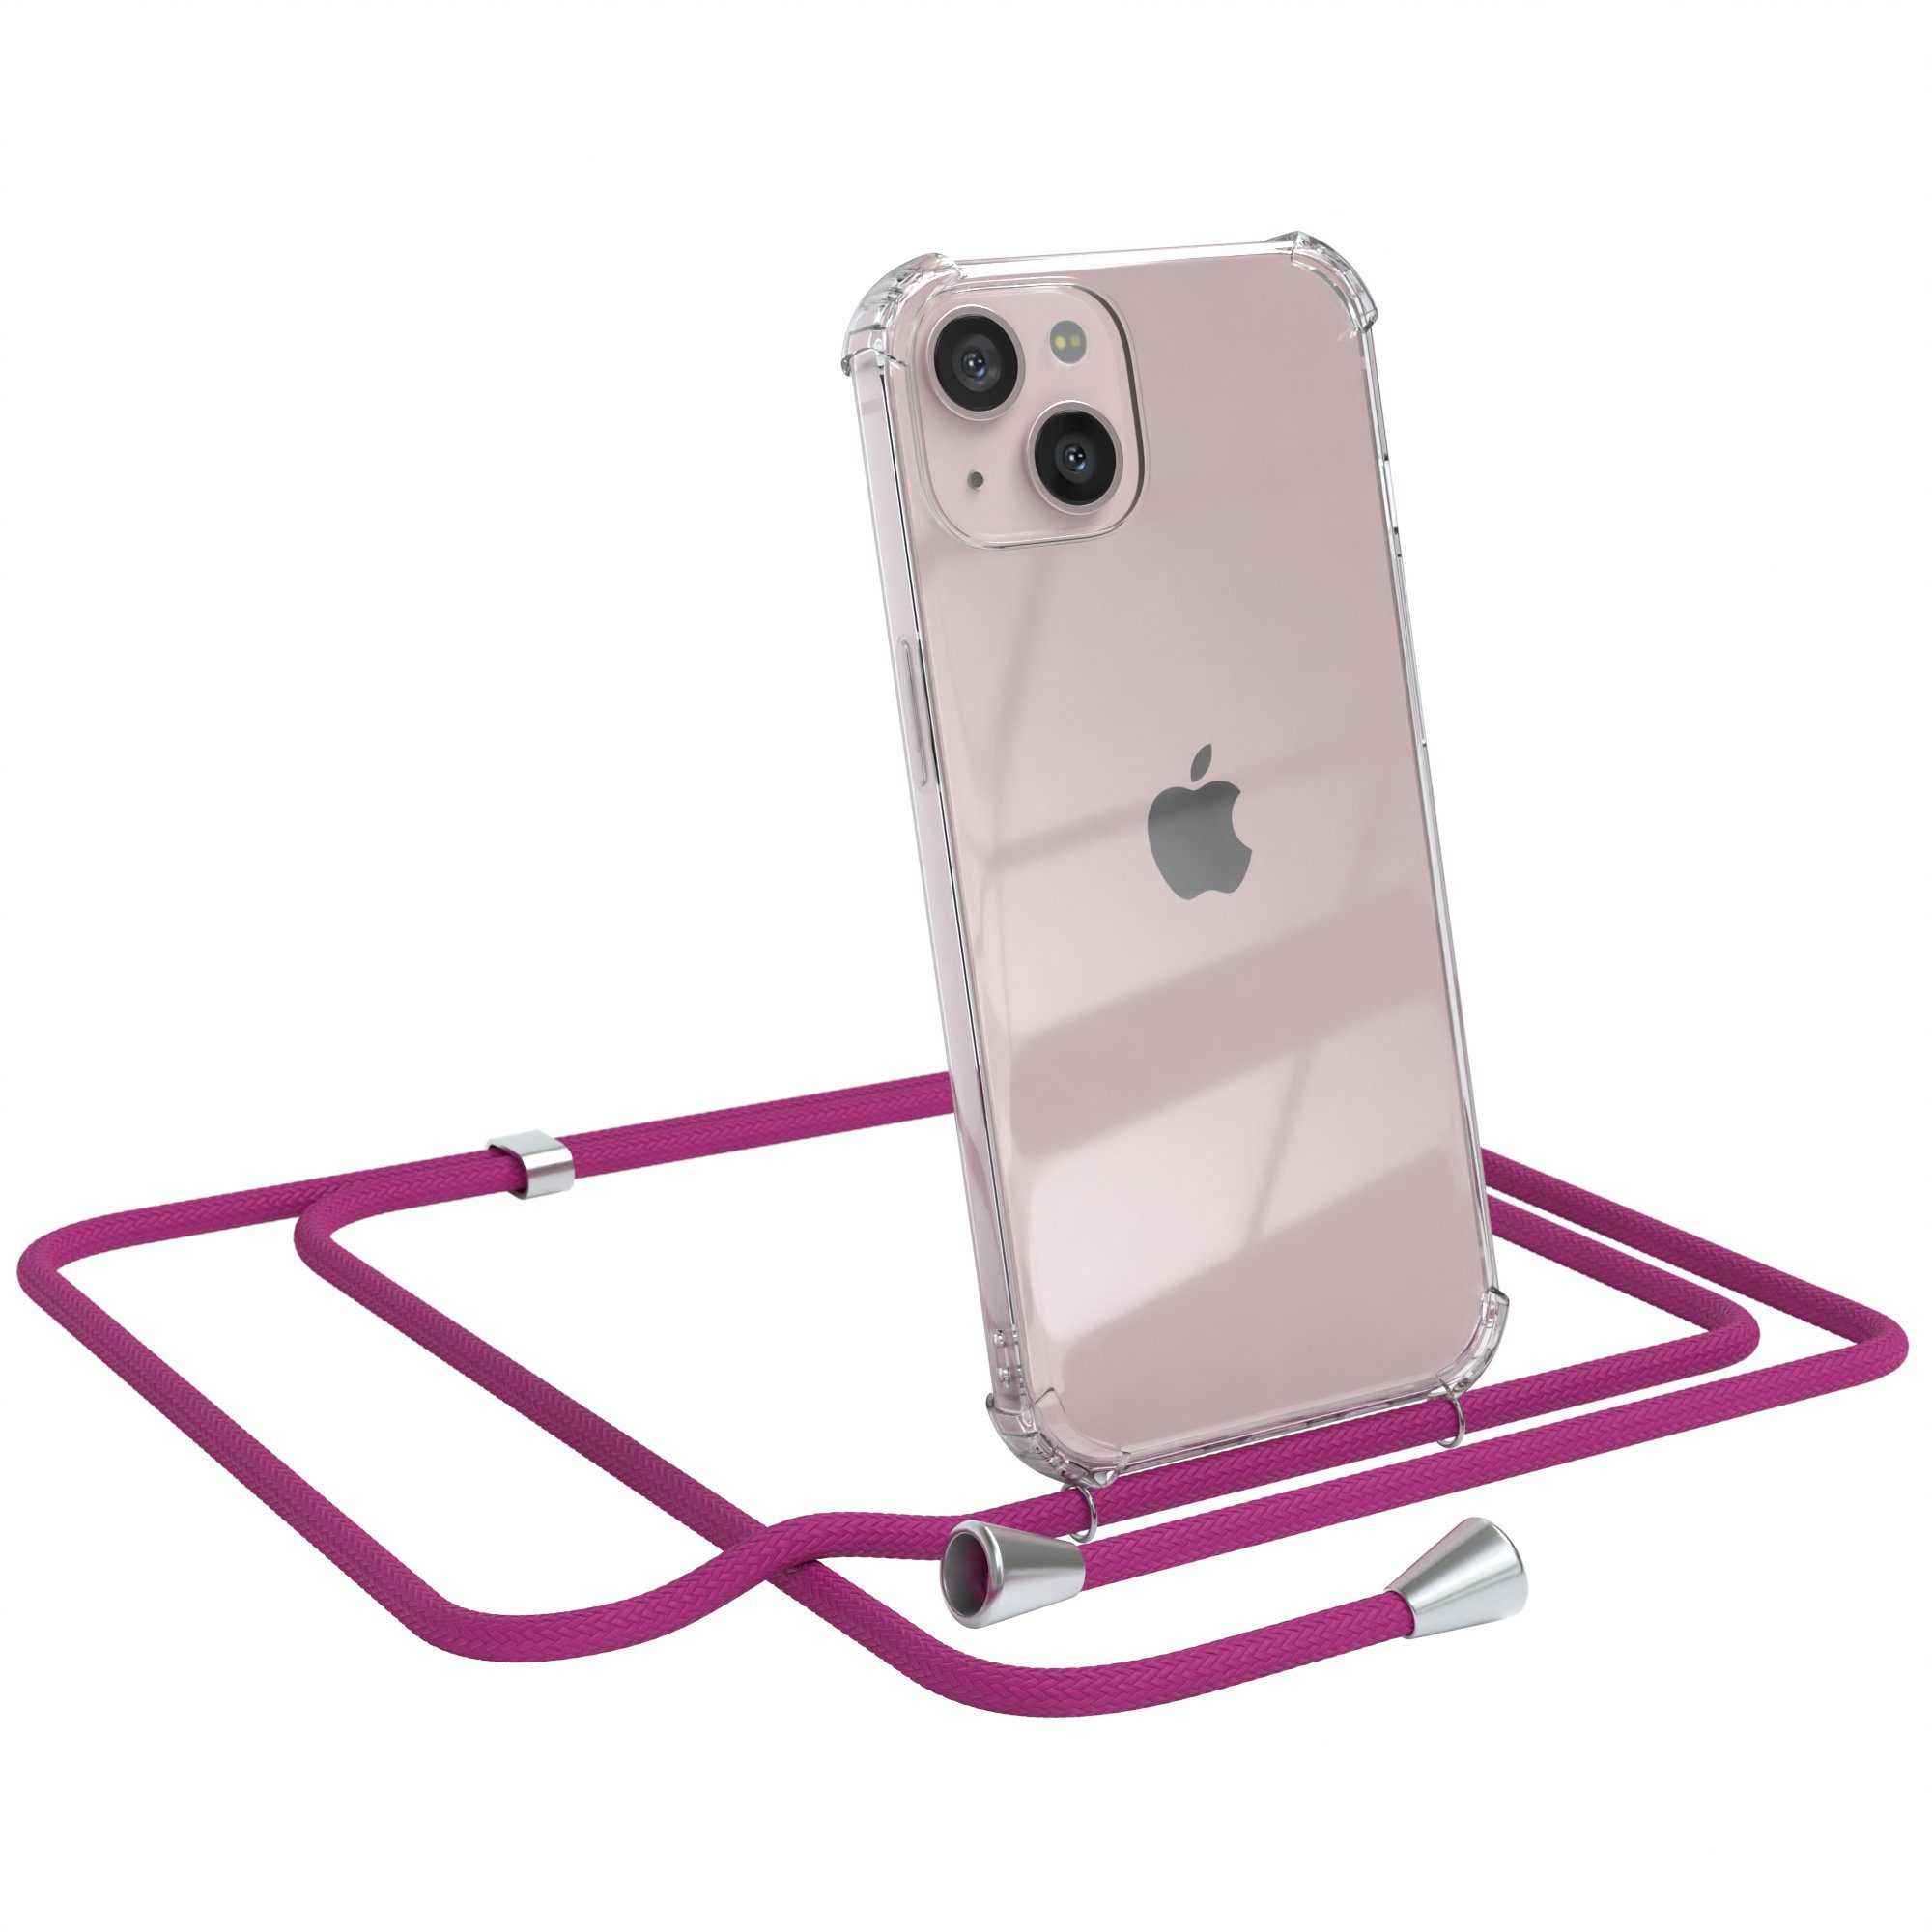 EAZY CASE Handykette Hülle mit Kette für Apple iPhone 13 6,1 Zoll, Handykordel Slimcover mit Umhängeband zum Umhängen Pink / Clip Silber